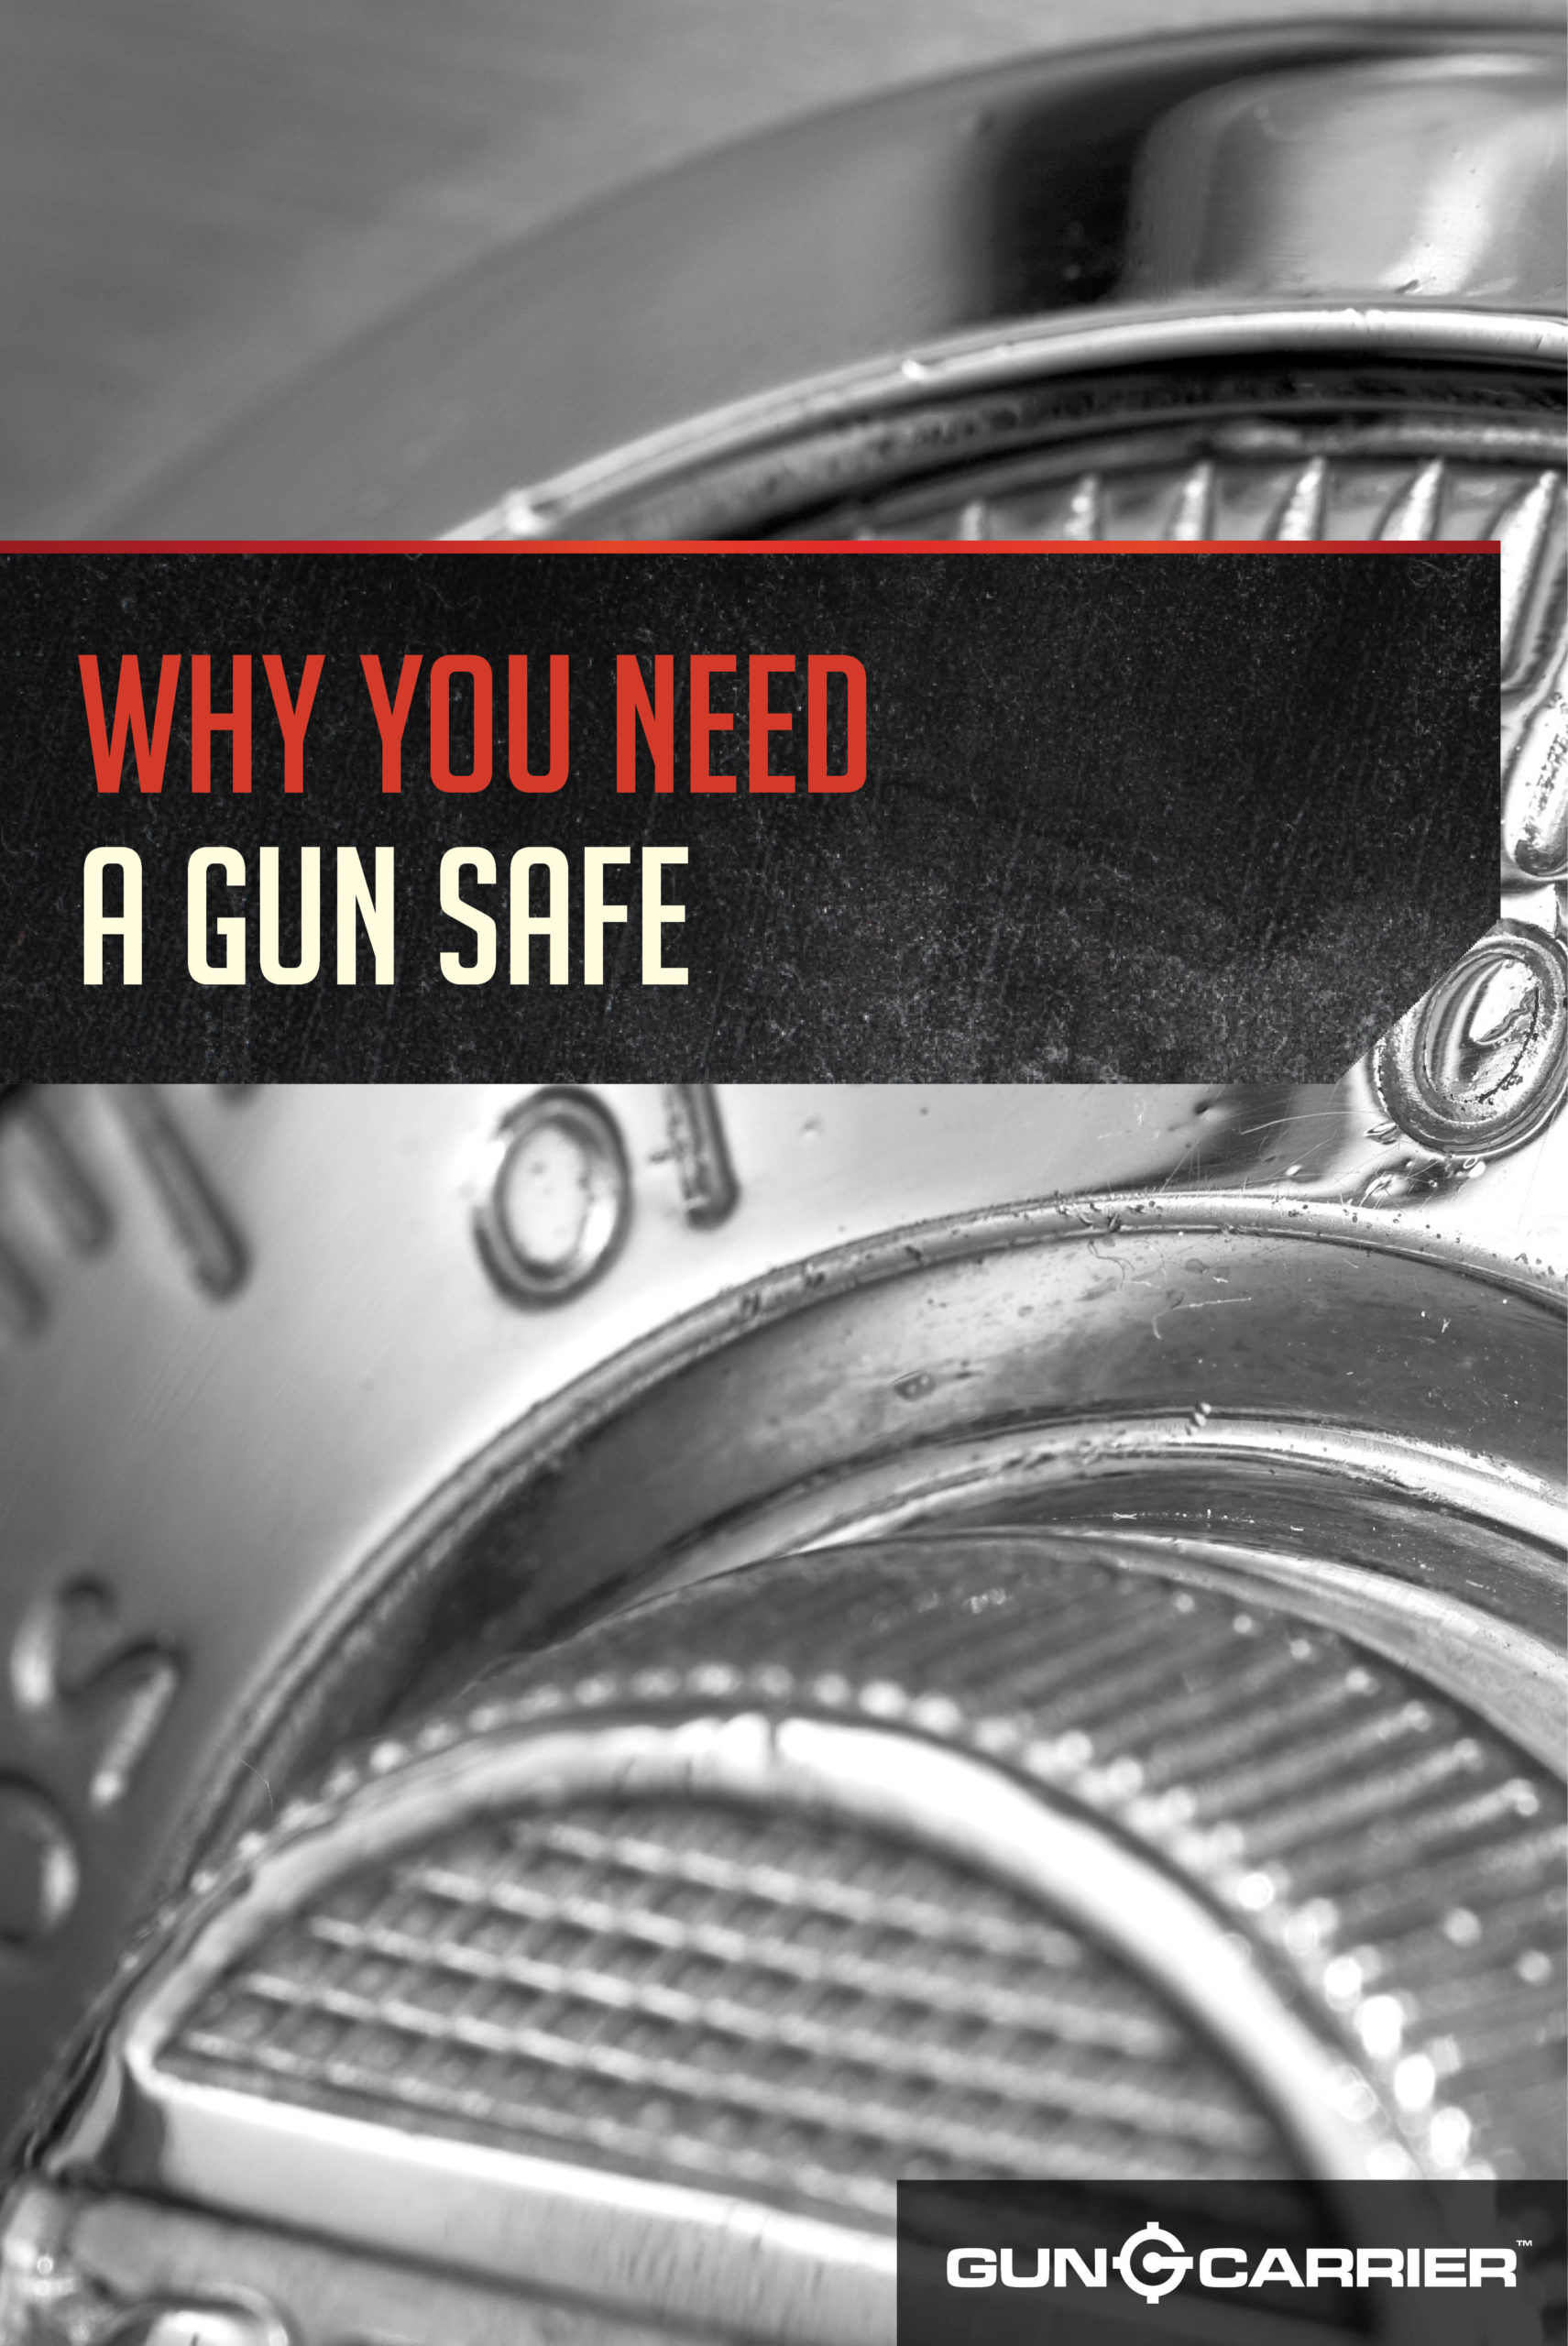 Why You Need a Gun Safe by Gun Carrier at https://guncarrier.com/advantages-gun-safe